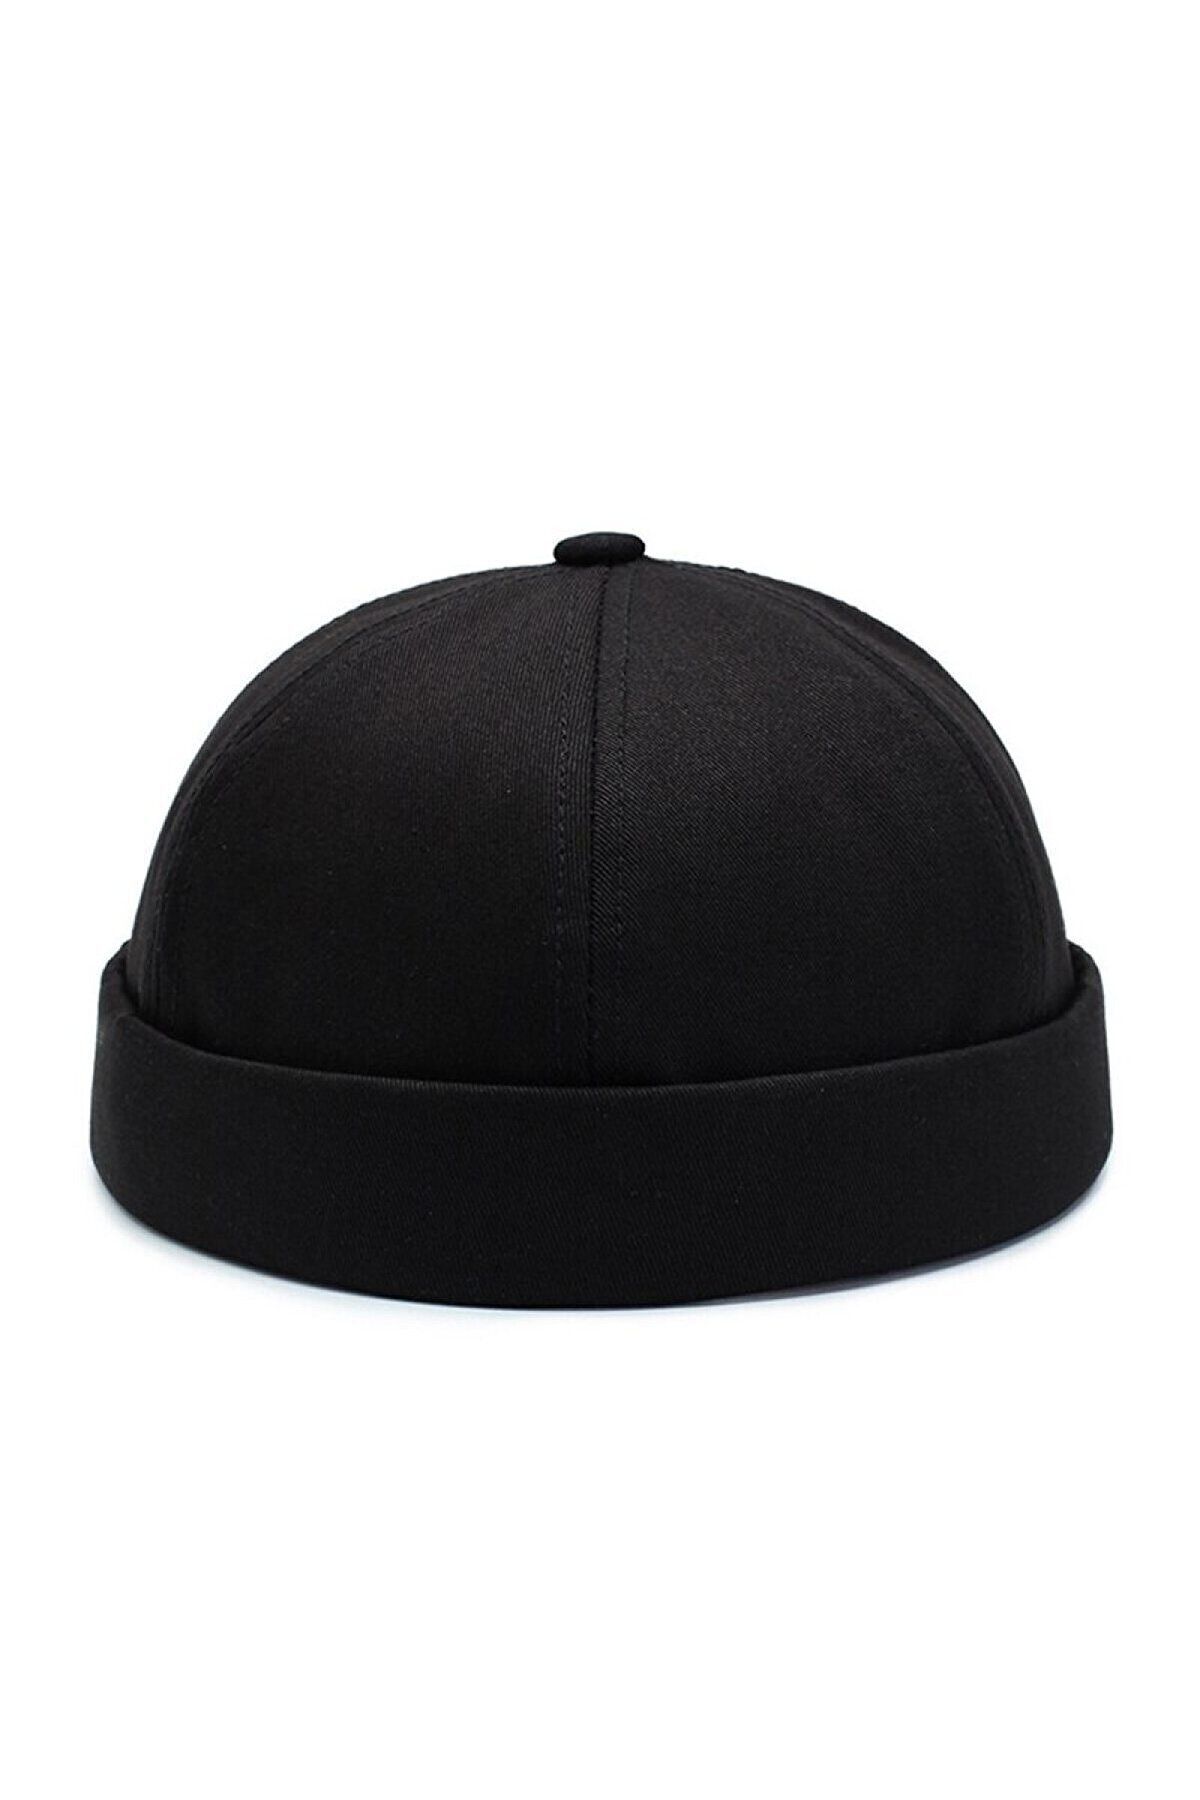 Rupen Kraft Unisex %100 Pamuk Cap Ayarlanabilir Docker Şapka Yazlık Takke Şapka Retro Şapka Siyah Takke Şapka